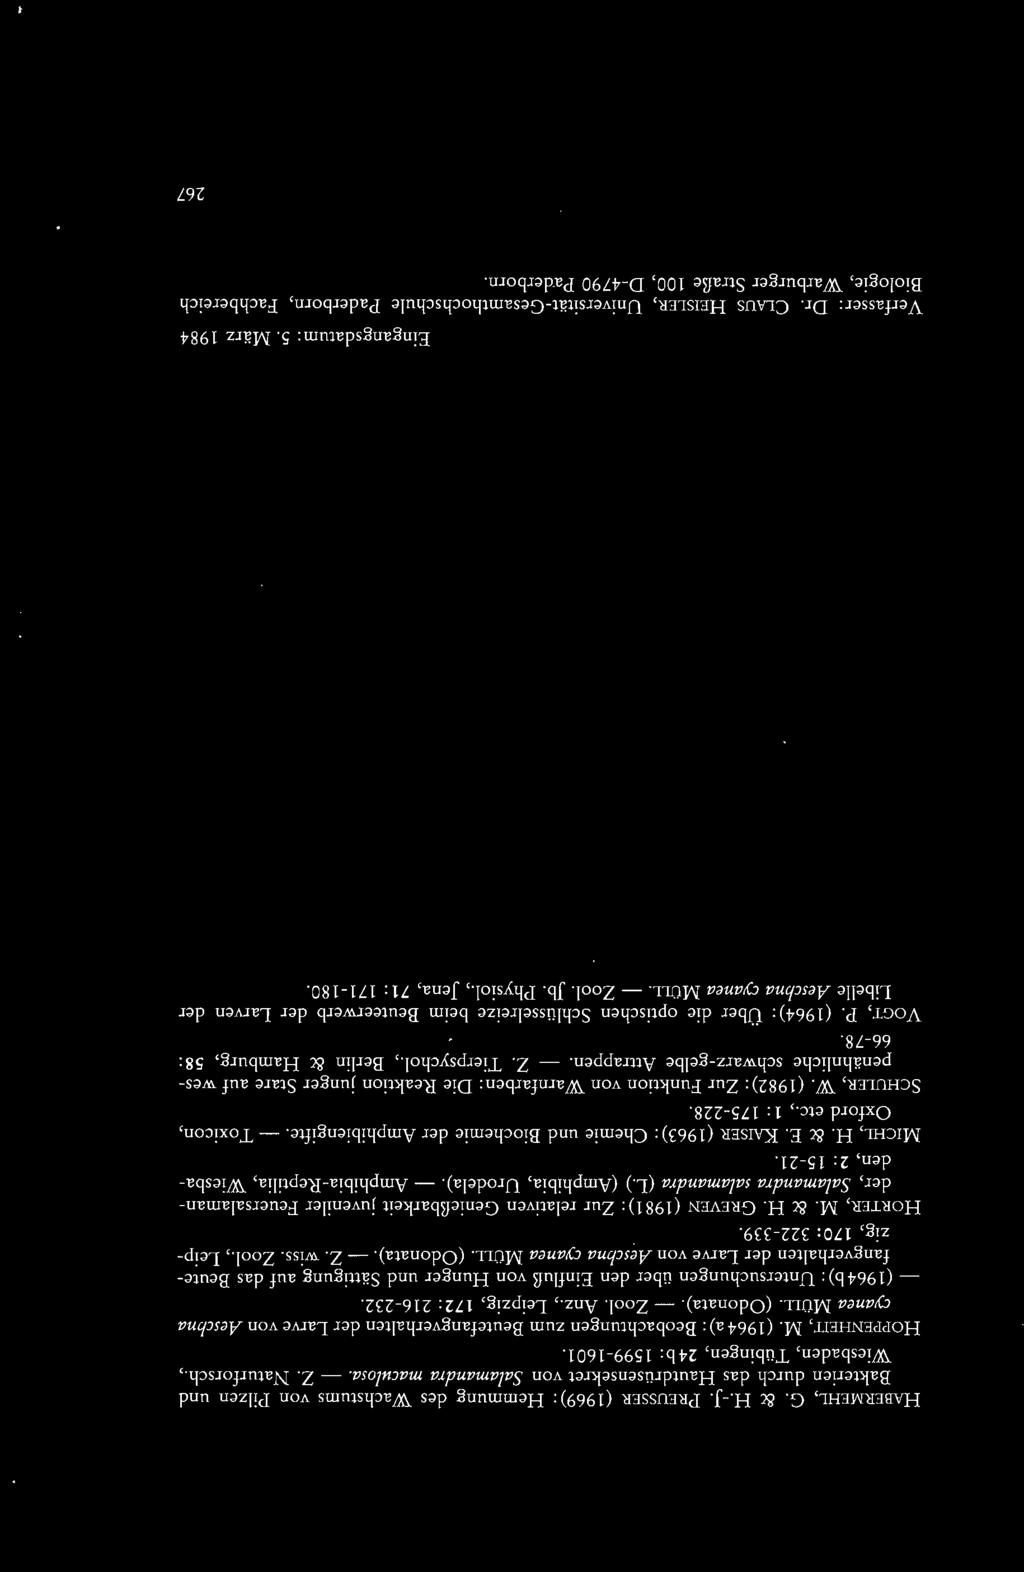 - (1964b) : Untersuchungen über den Einfluß von Hunger und Sättigung auf das Beutefangverhalten der Larve von Aeschna cyanea MOLL (Odonata). - Z. wiss. Zoo!., Leipzig, 170: 322-339. HoRTER, M. & H.